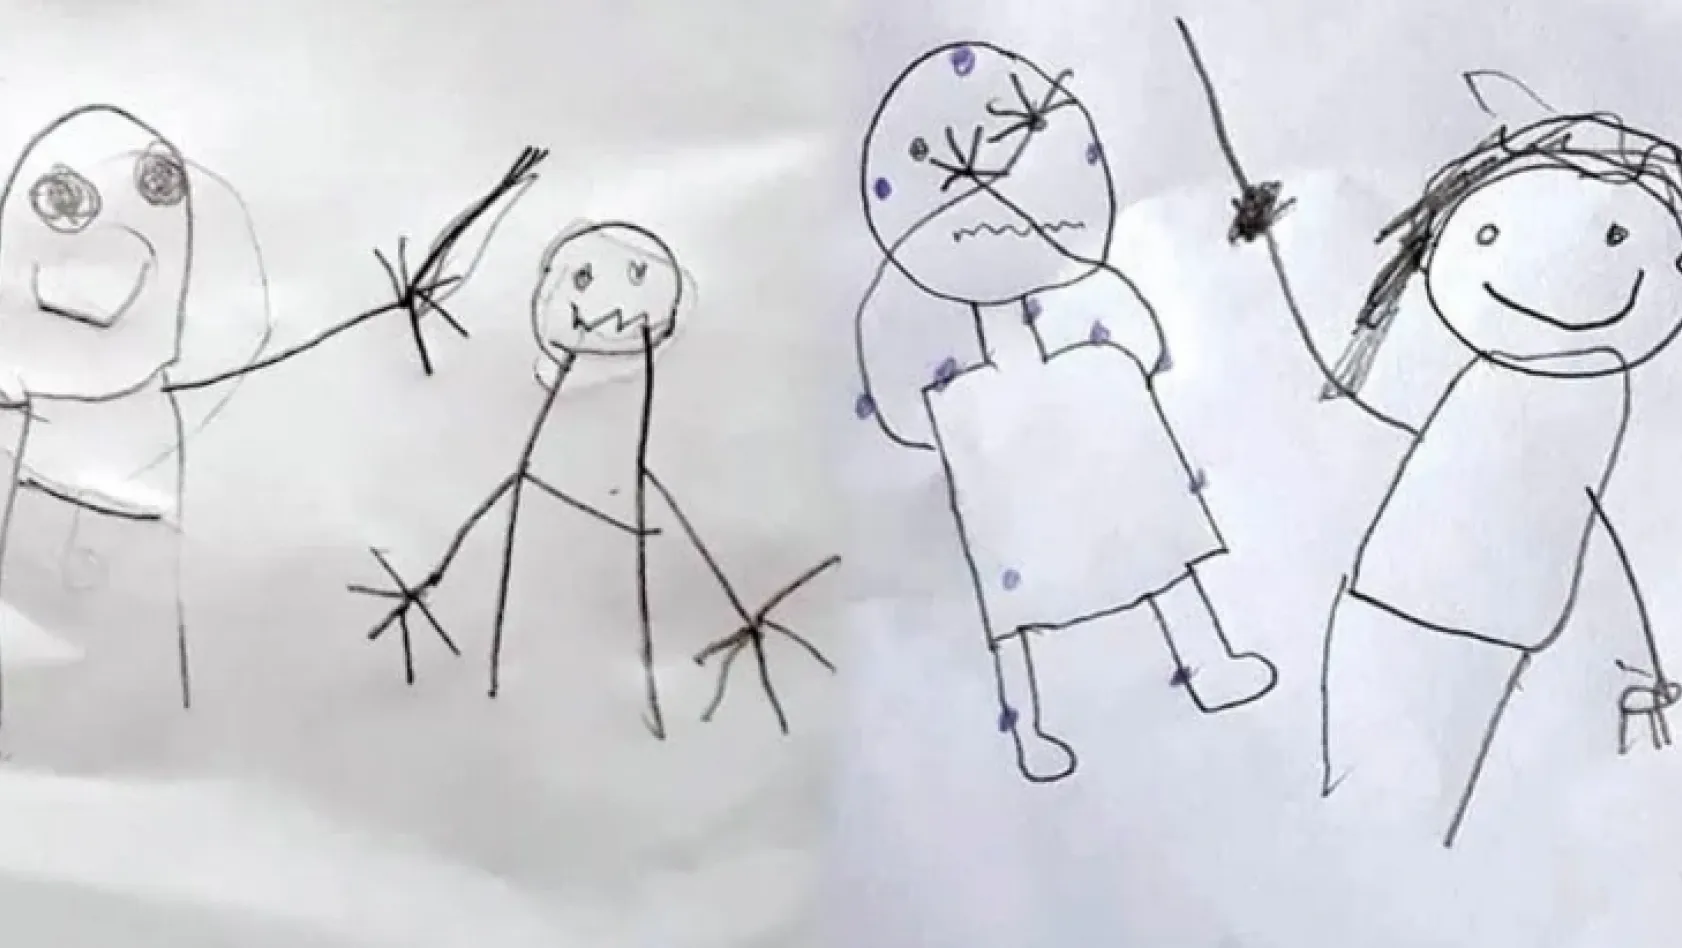 İki çocuğun istismarı çizerek anlattığı davada gelişme!